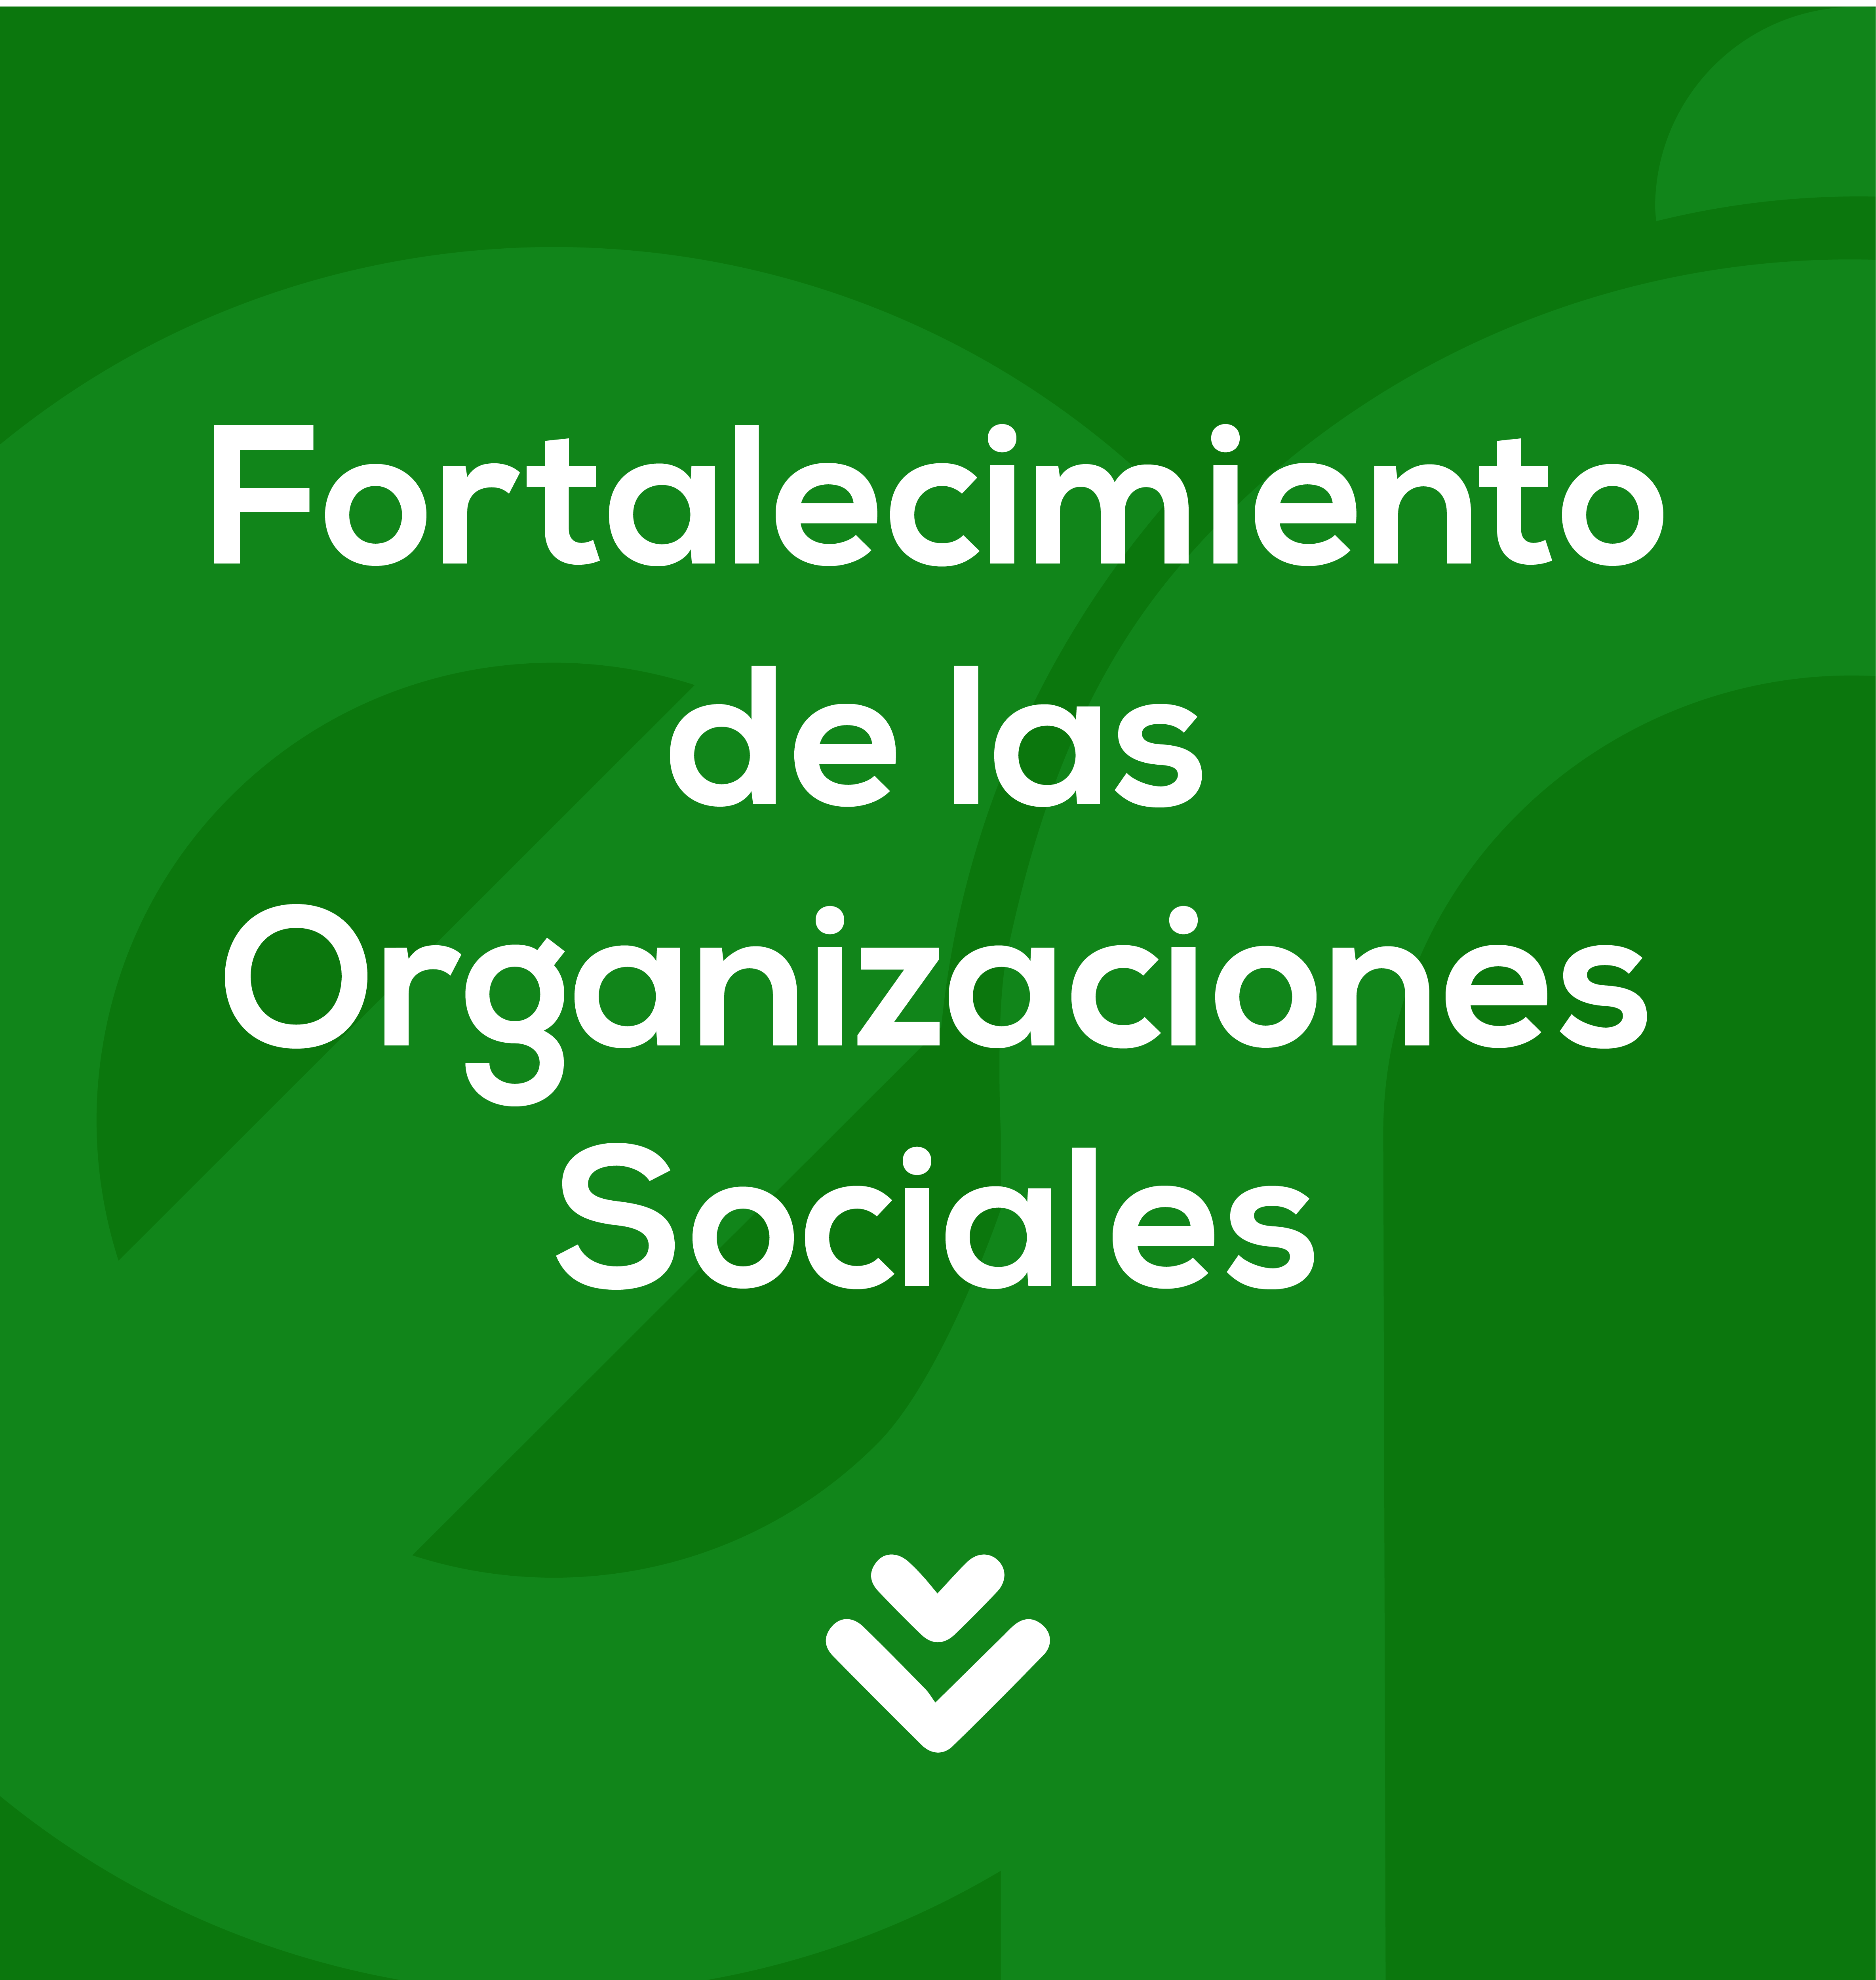 FORTALECIMIENTO DE LAS ORGANIZACIONES SOCIALES